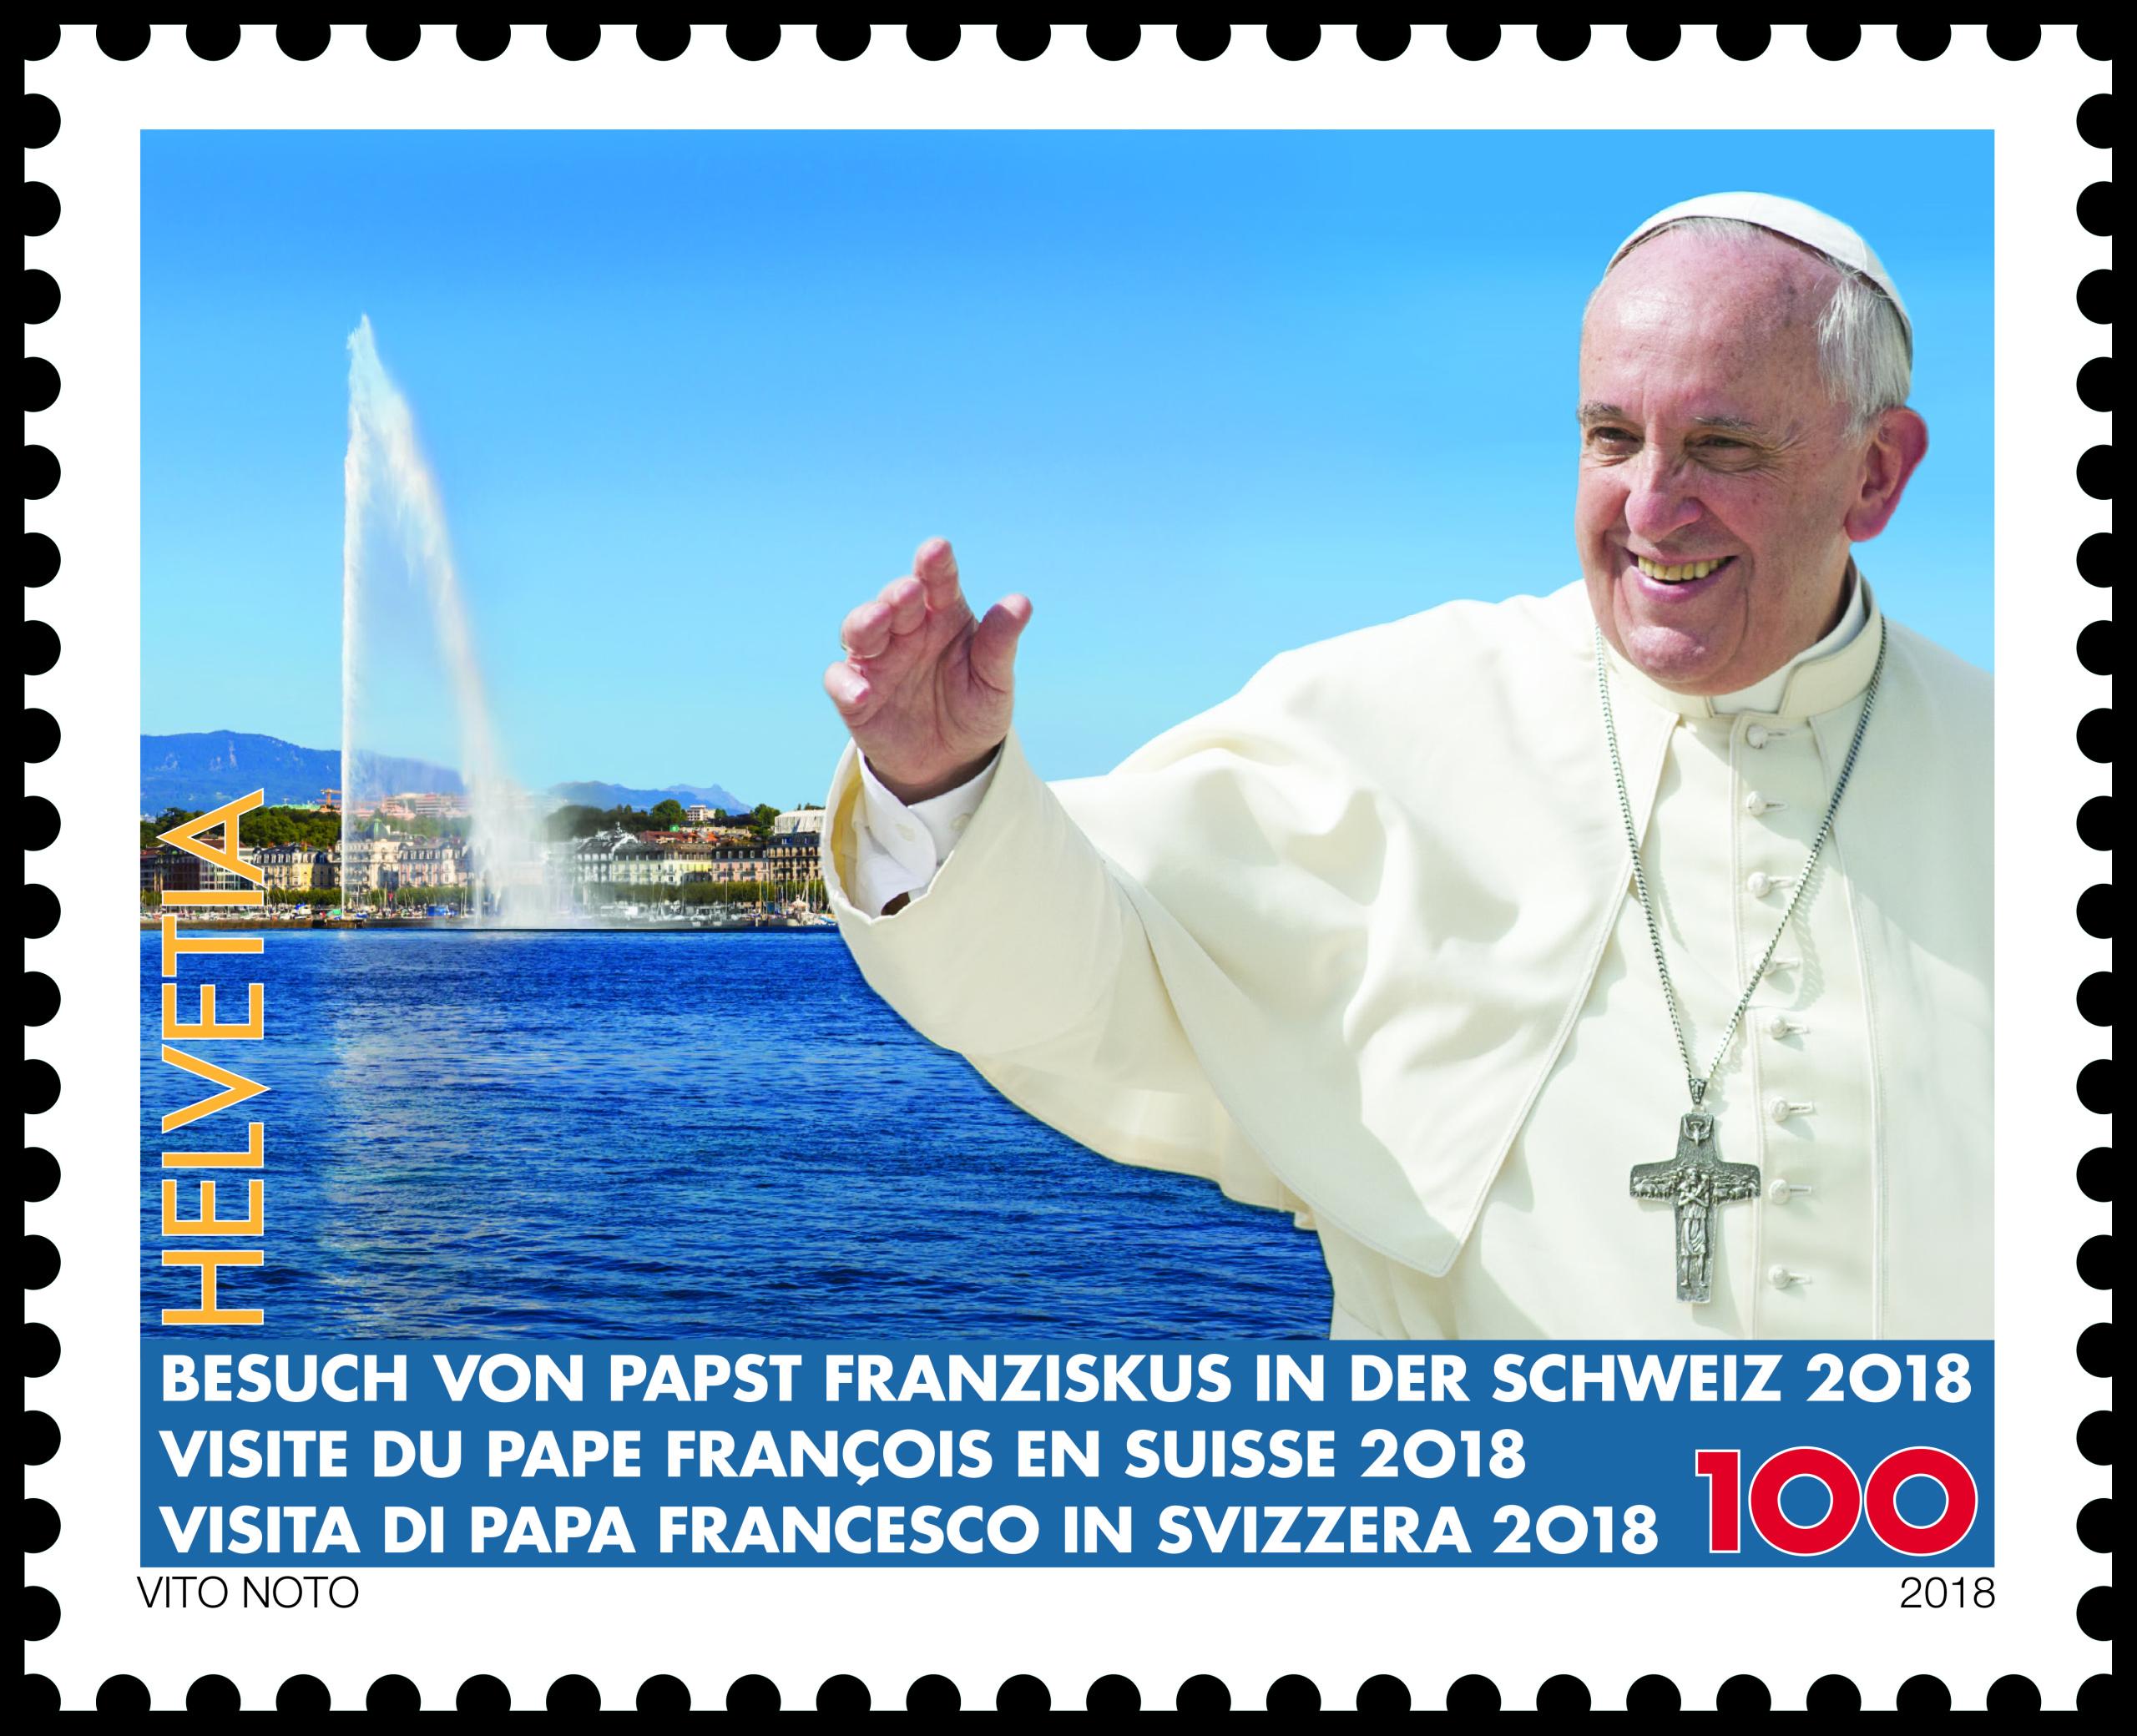 Timbre postal con la imagen del papa Francisco.